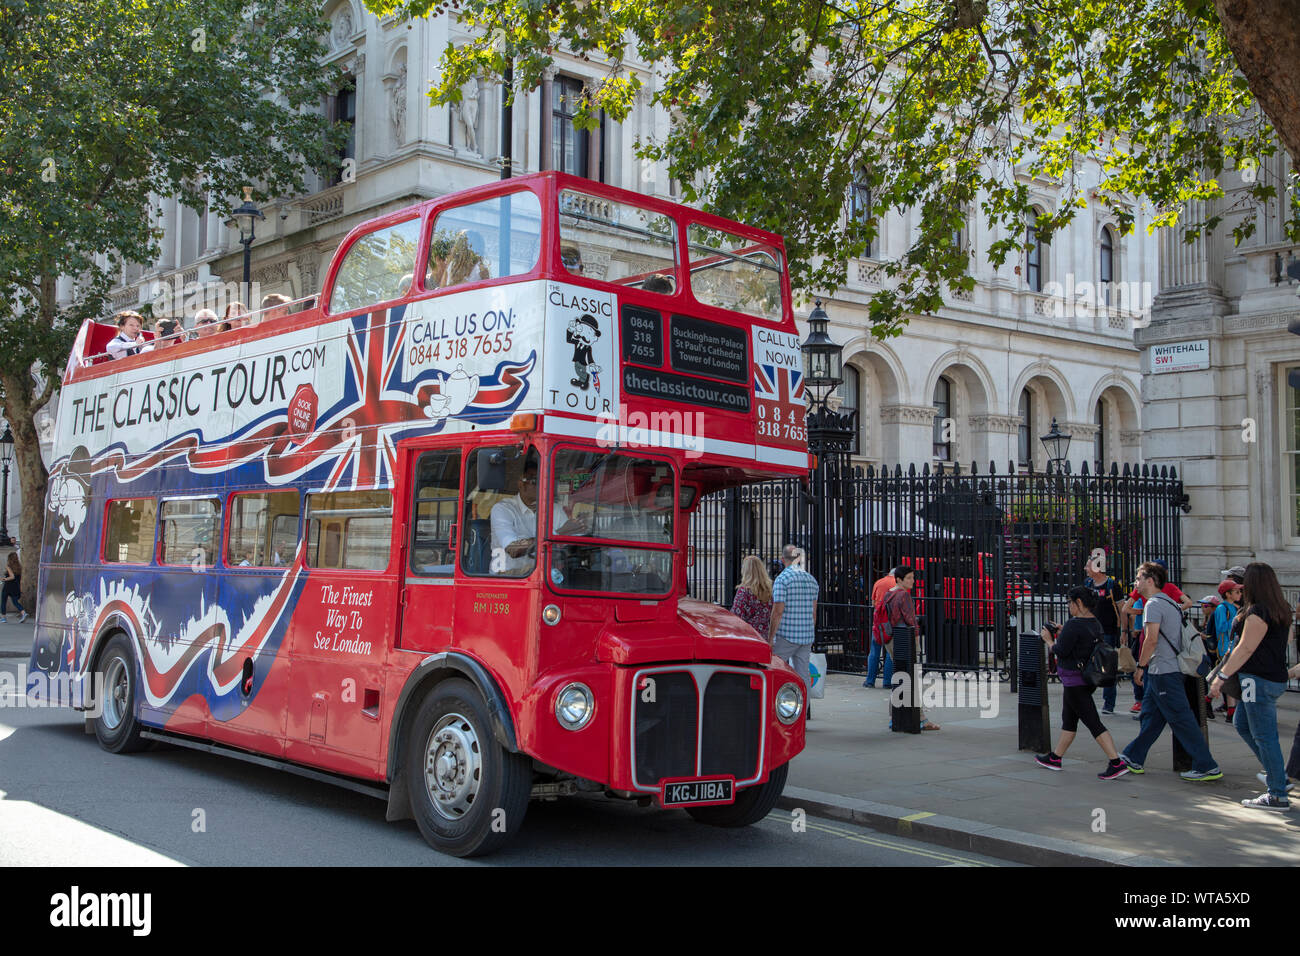 Alte Klassiker London Bus Symbol, hier als Tourist Bus verwendet, hält direkt vor dem berühmten Londoner Sehenswürdigkeiten 10 Downing Street, der Heimat der Premierminister Großbritanniens. Stockfoto